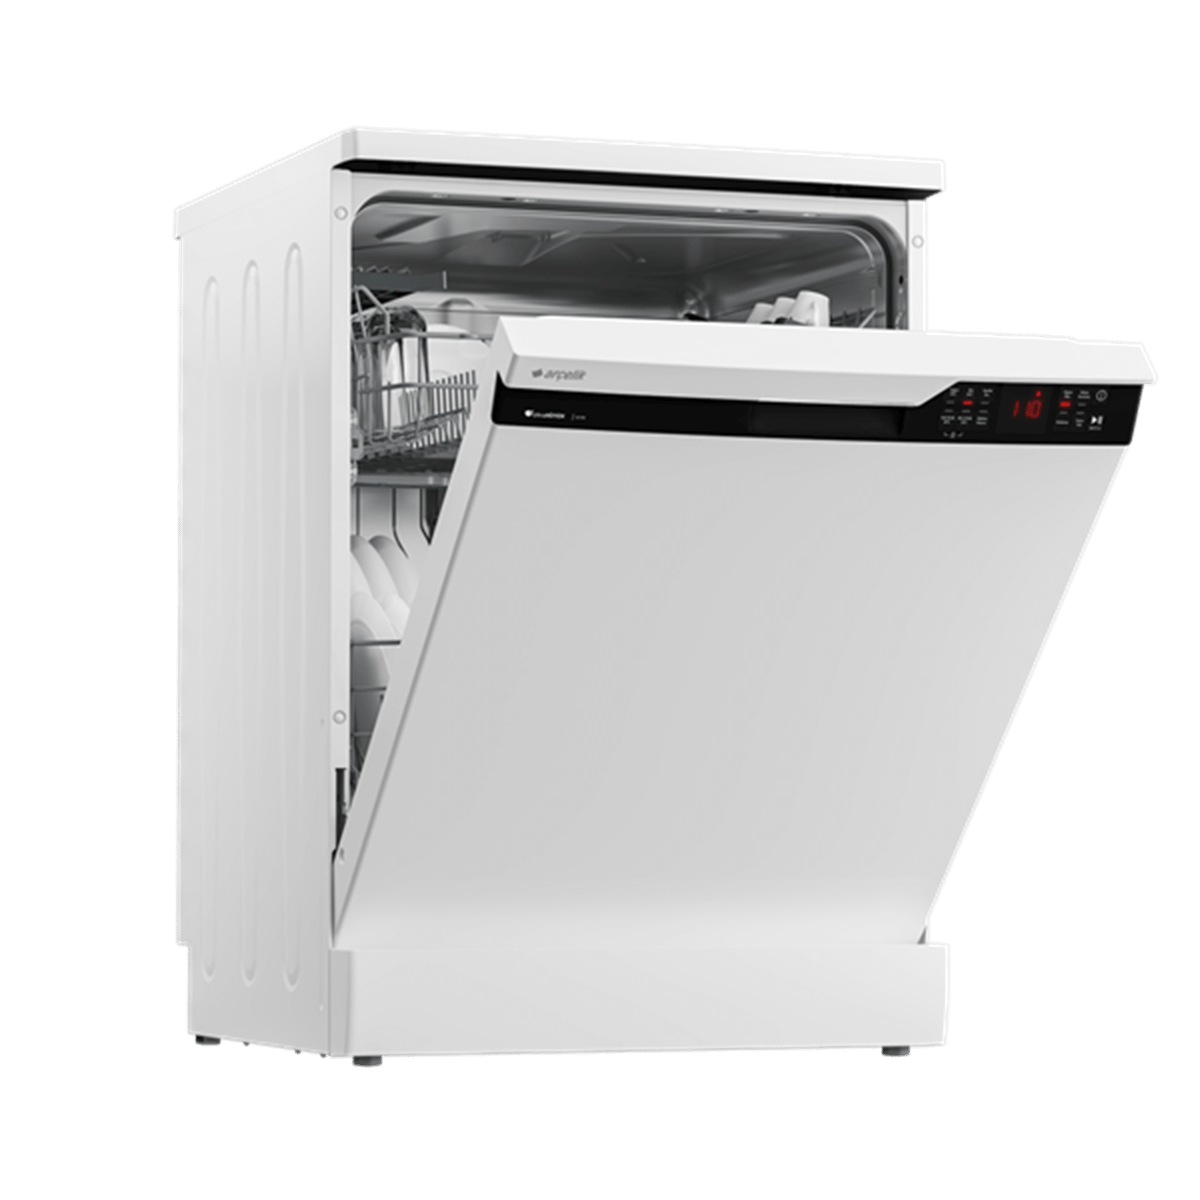 Arçelik 6144 4 Programlı Beyaz Bulaşık Makinesi (İstanbul'a Teslim Fiyat) -  Arçelik Beyaz Eşya